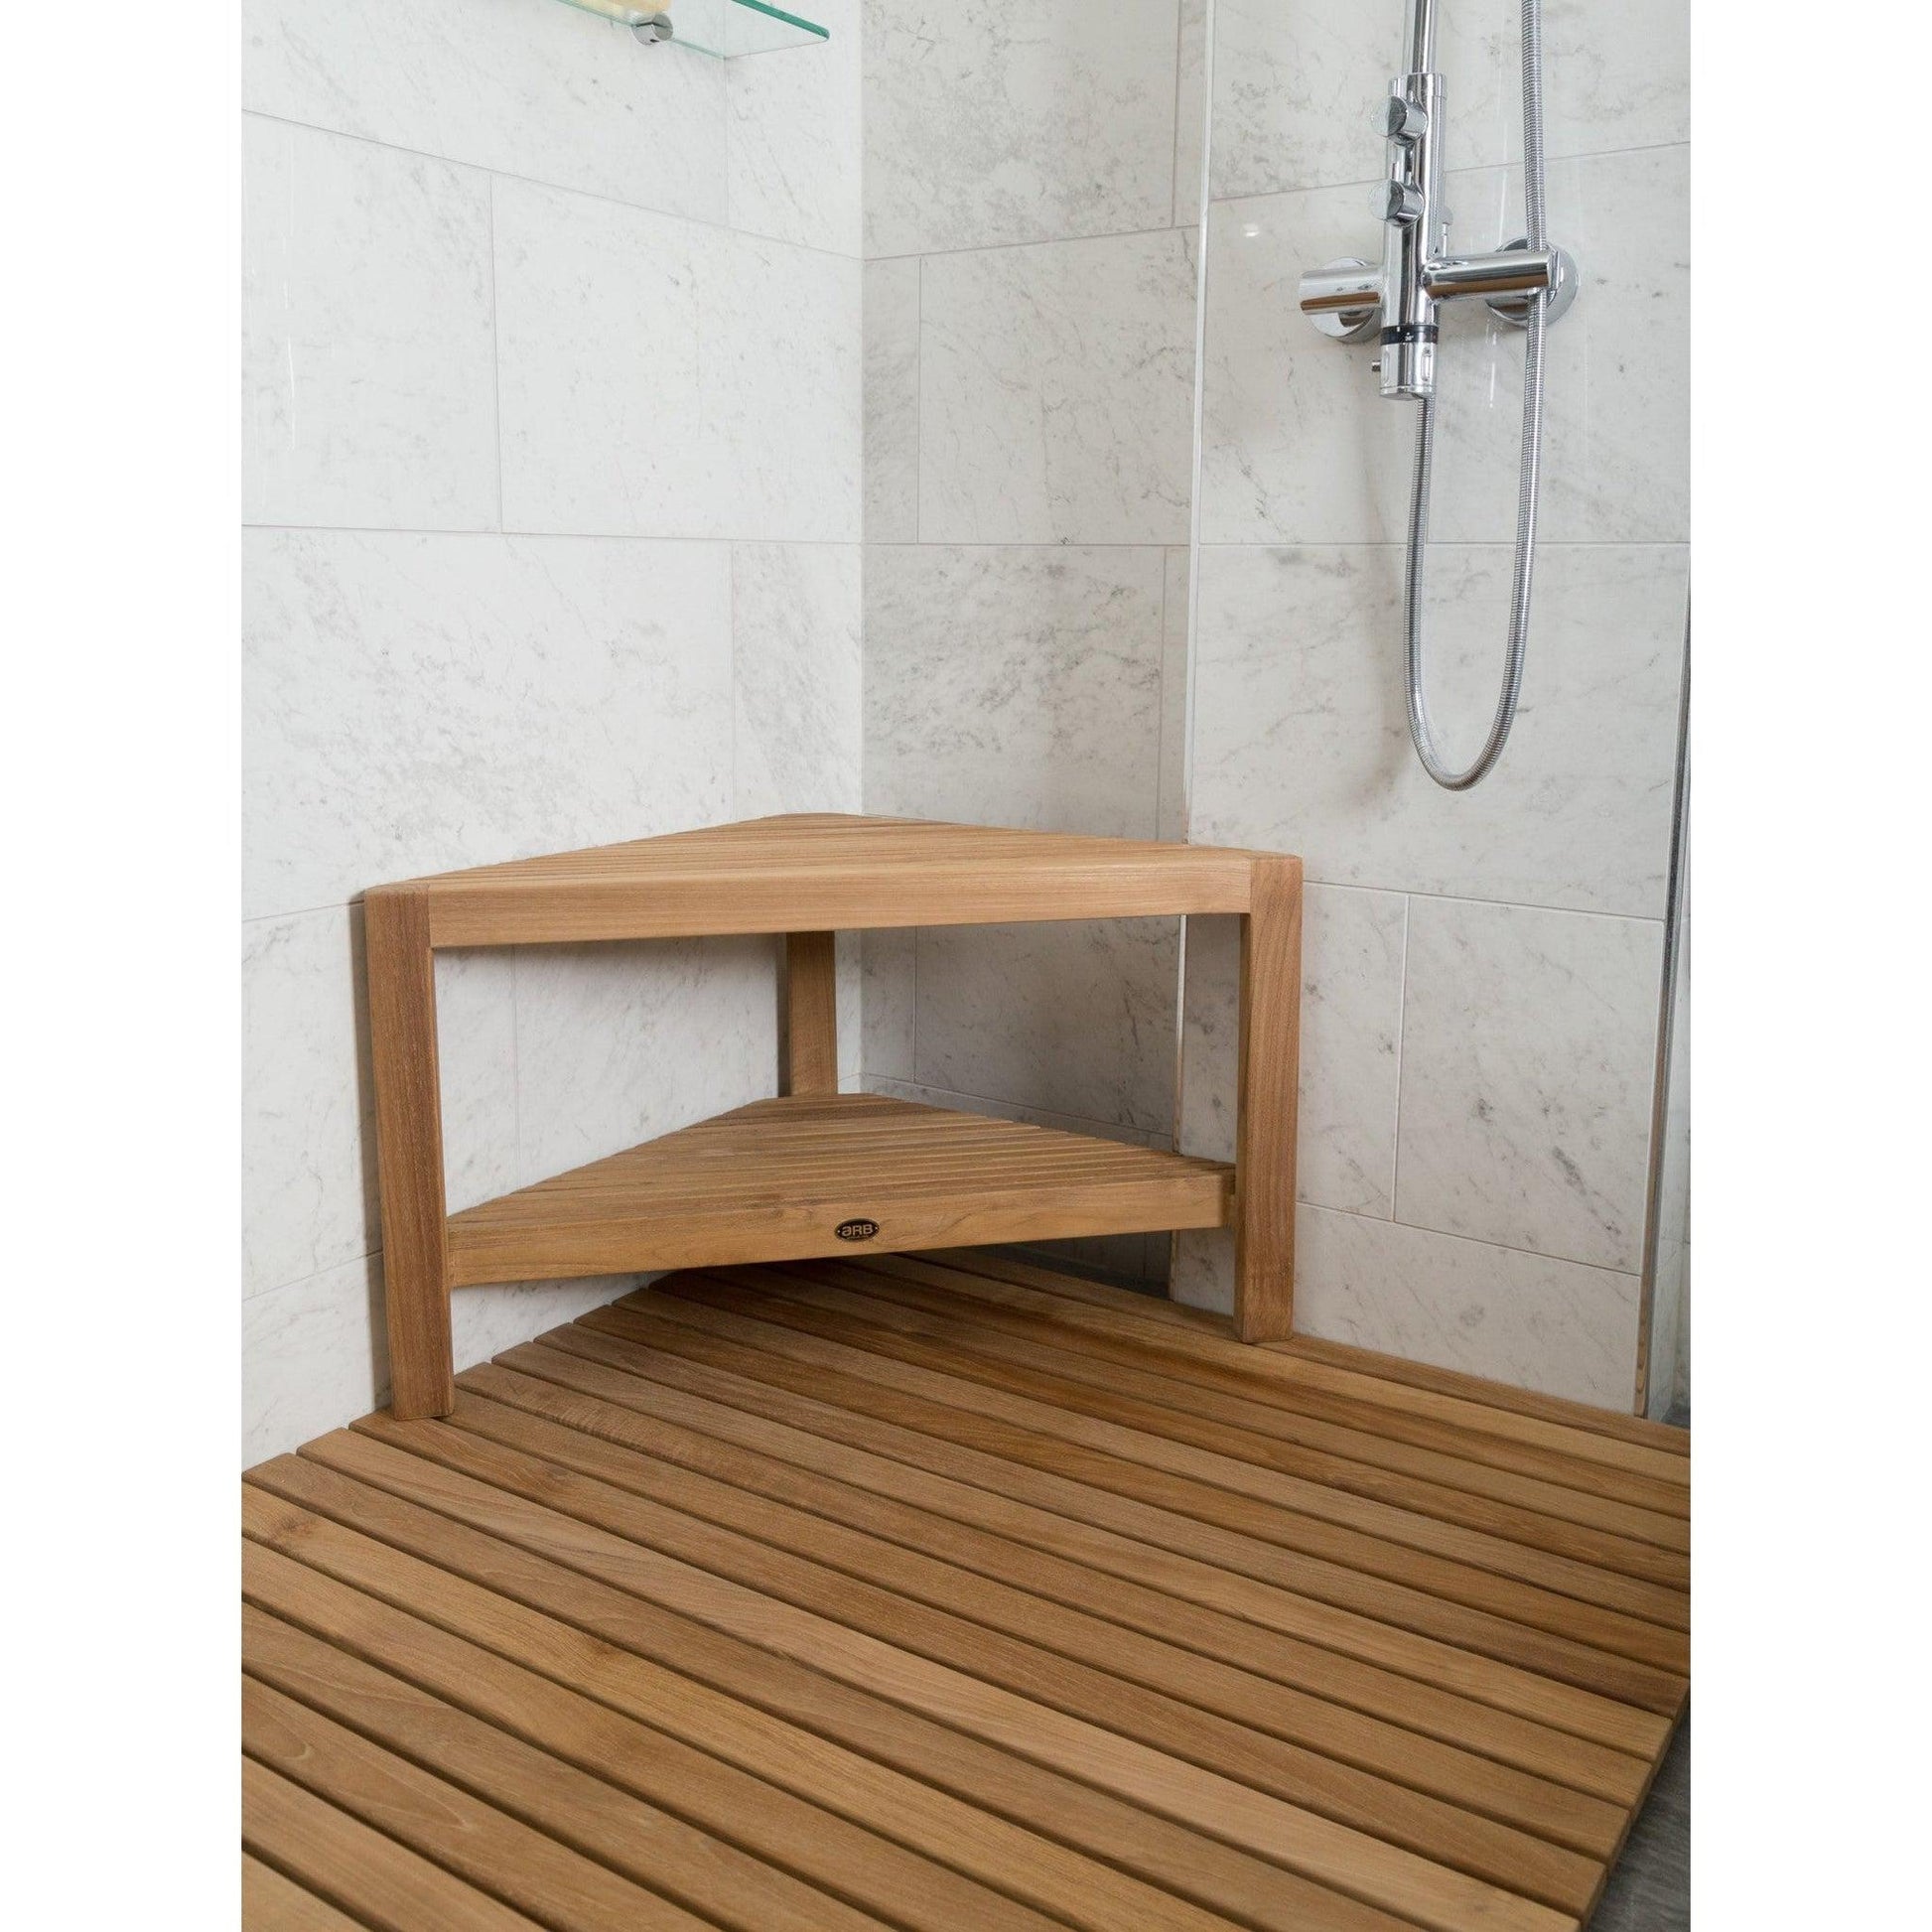 ARB Teak & Specialties Fiji 32" Solid Teak Wood Corner Shower Bench With Built-in Shelf